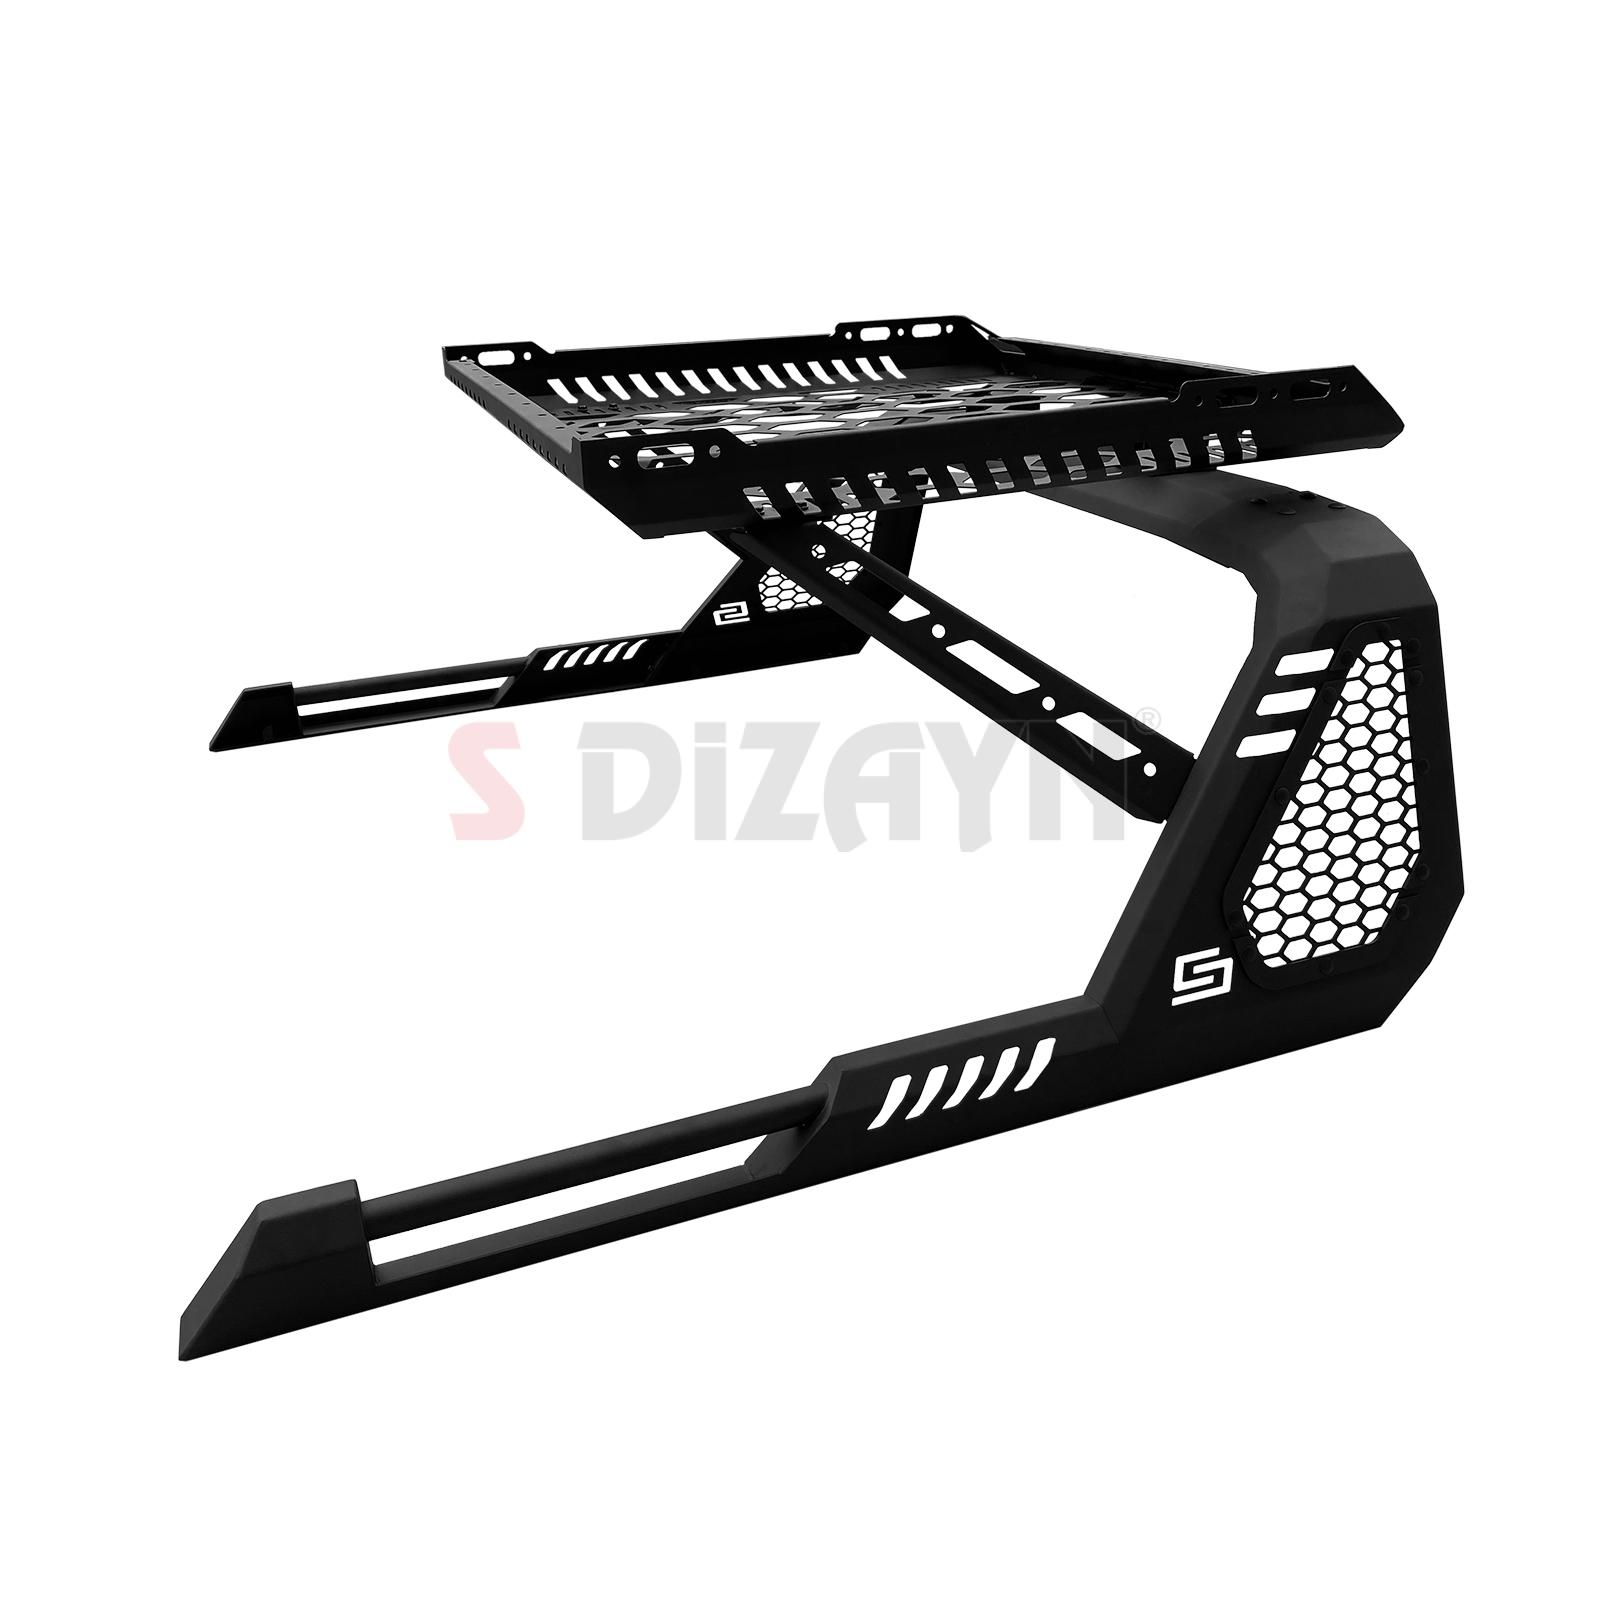 S-Dizayn SDX 4WD Off Road Isuzu D-Max 2 Sepetli Çelik Roll Bar V1 2012-2019 #2